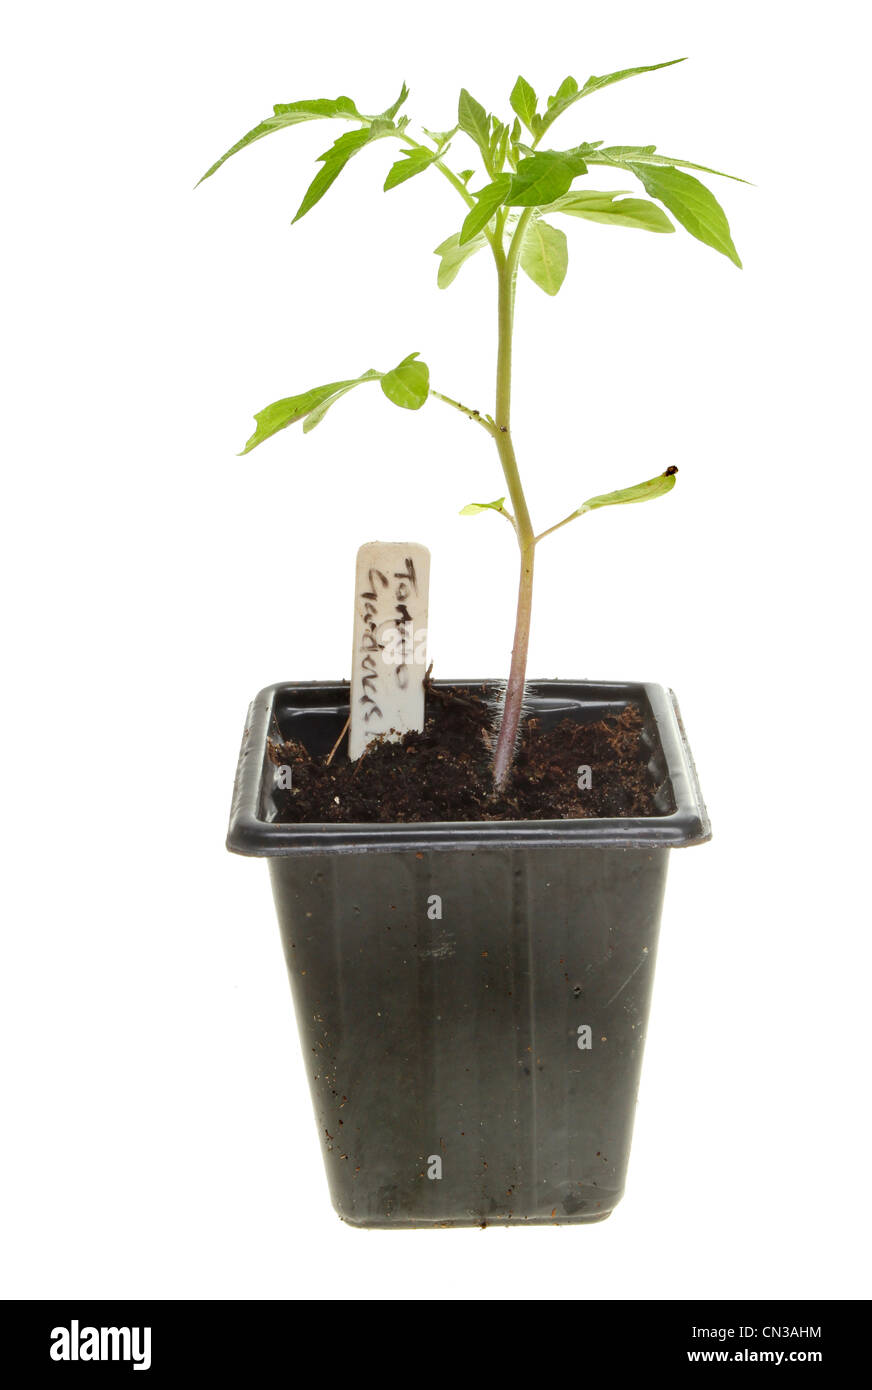 La plante de tomate dans un pot en plastique avec une étiquette blanche contre isolés Banque D'Images